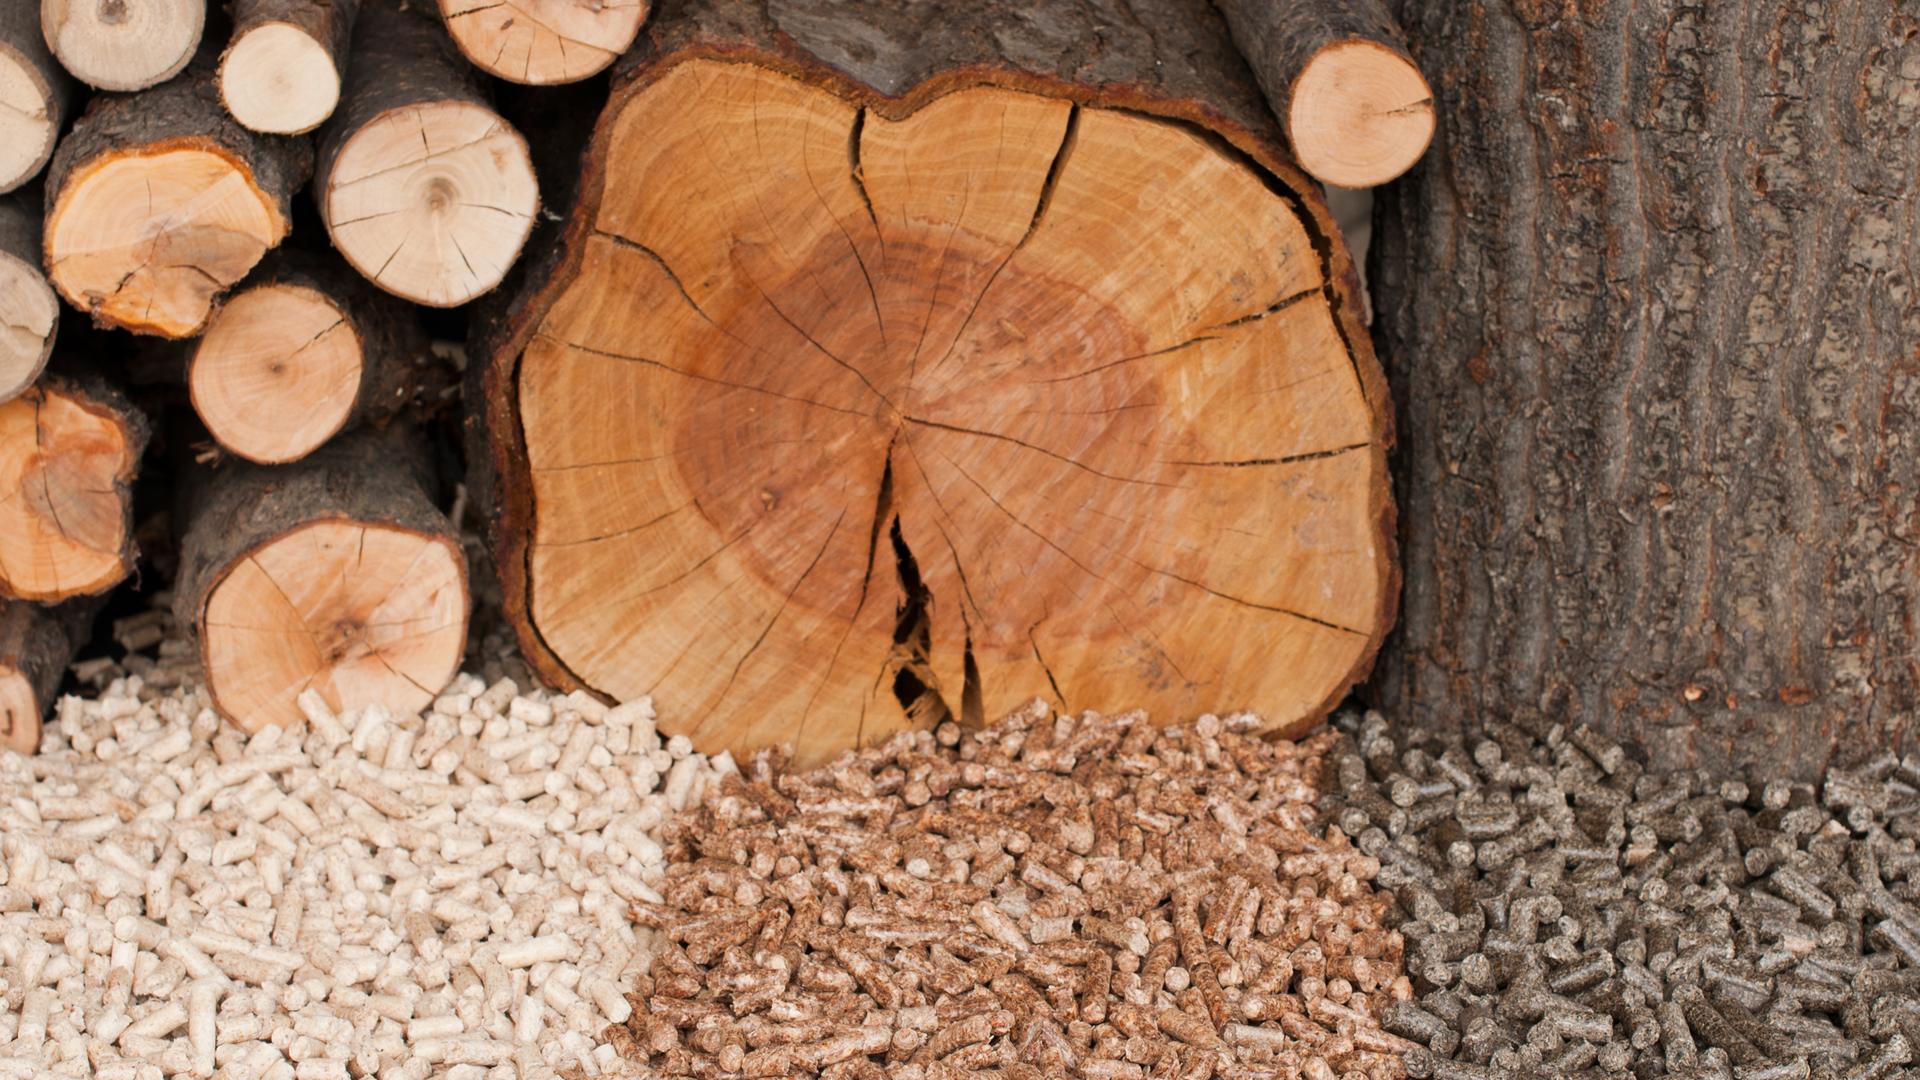 Verschieden Arten von Holzpellets liegen vor den jeweiligen Holzarten.